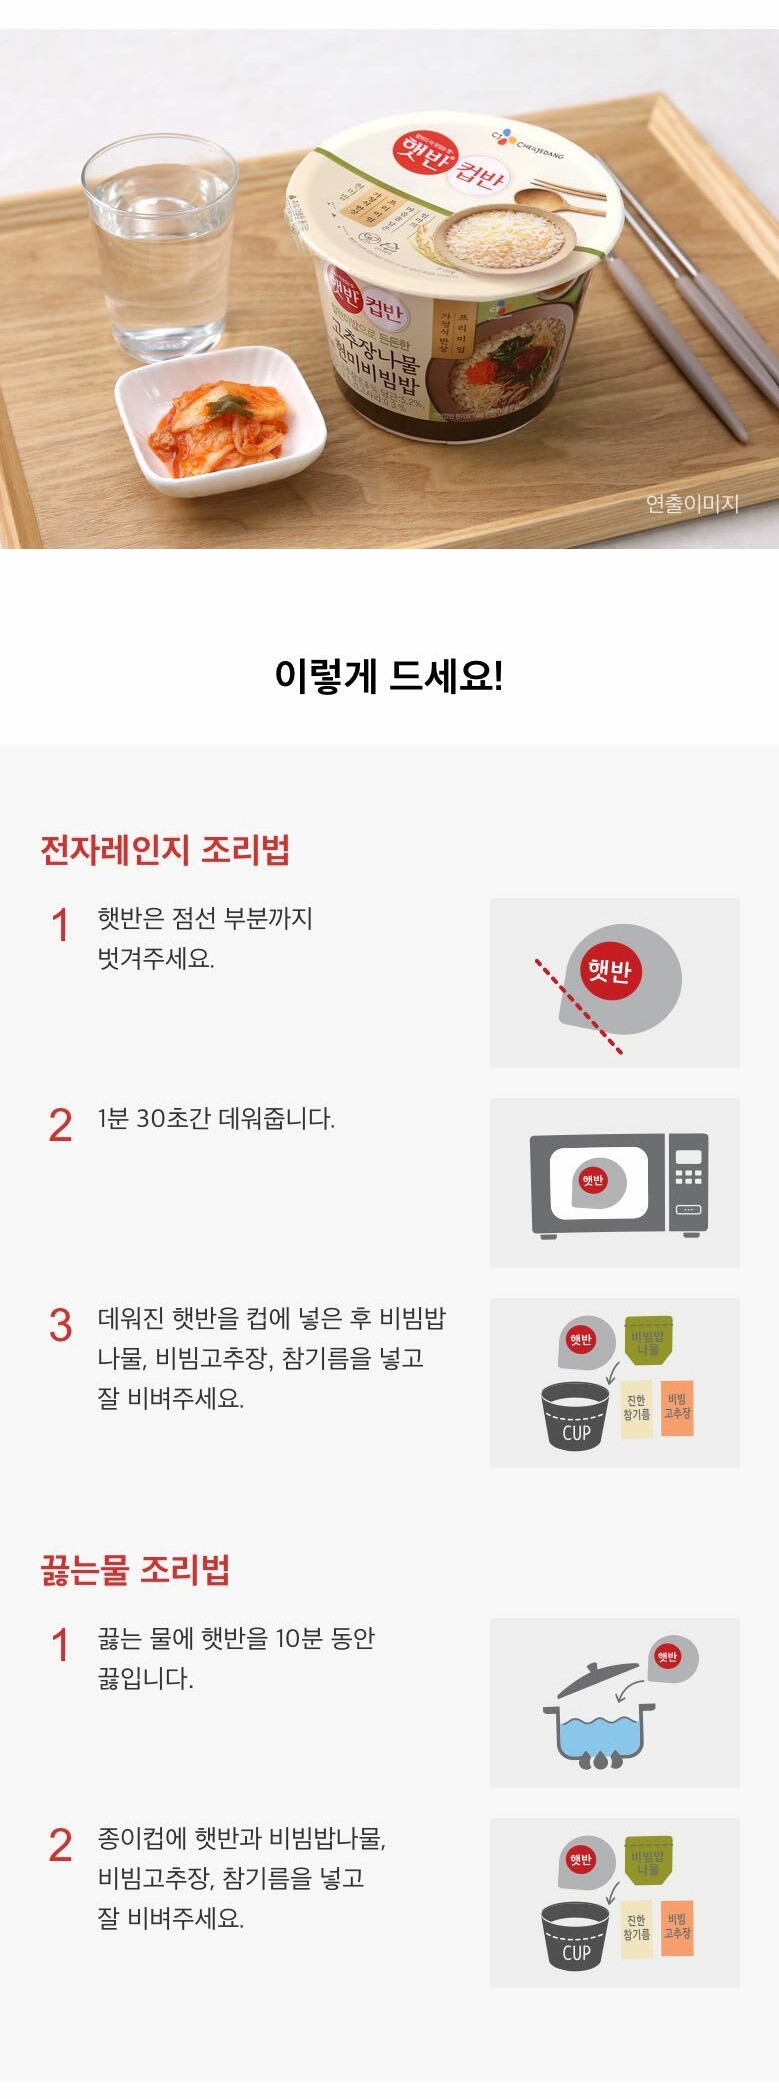 韓國食品-[CJ] 컵반 (고추장나물현미비빔밥) 229g